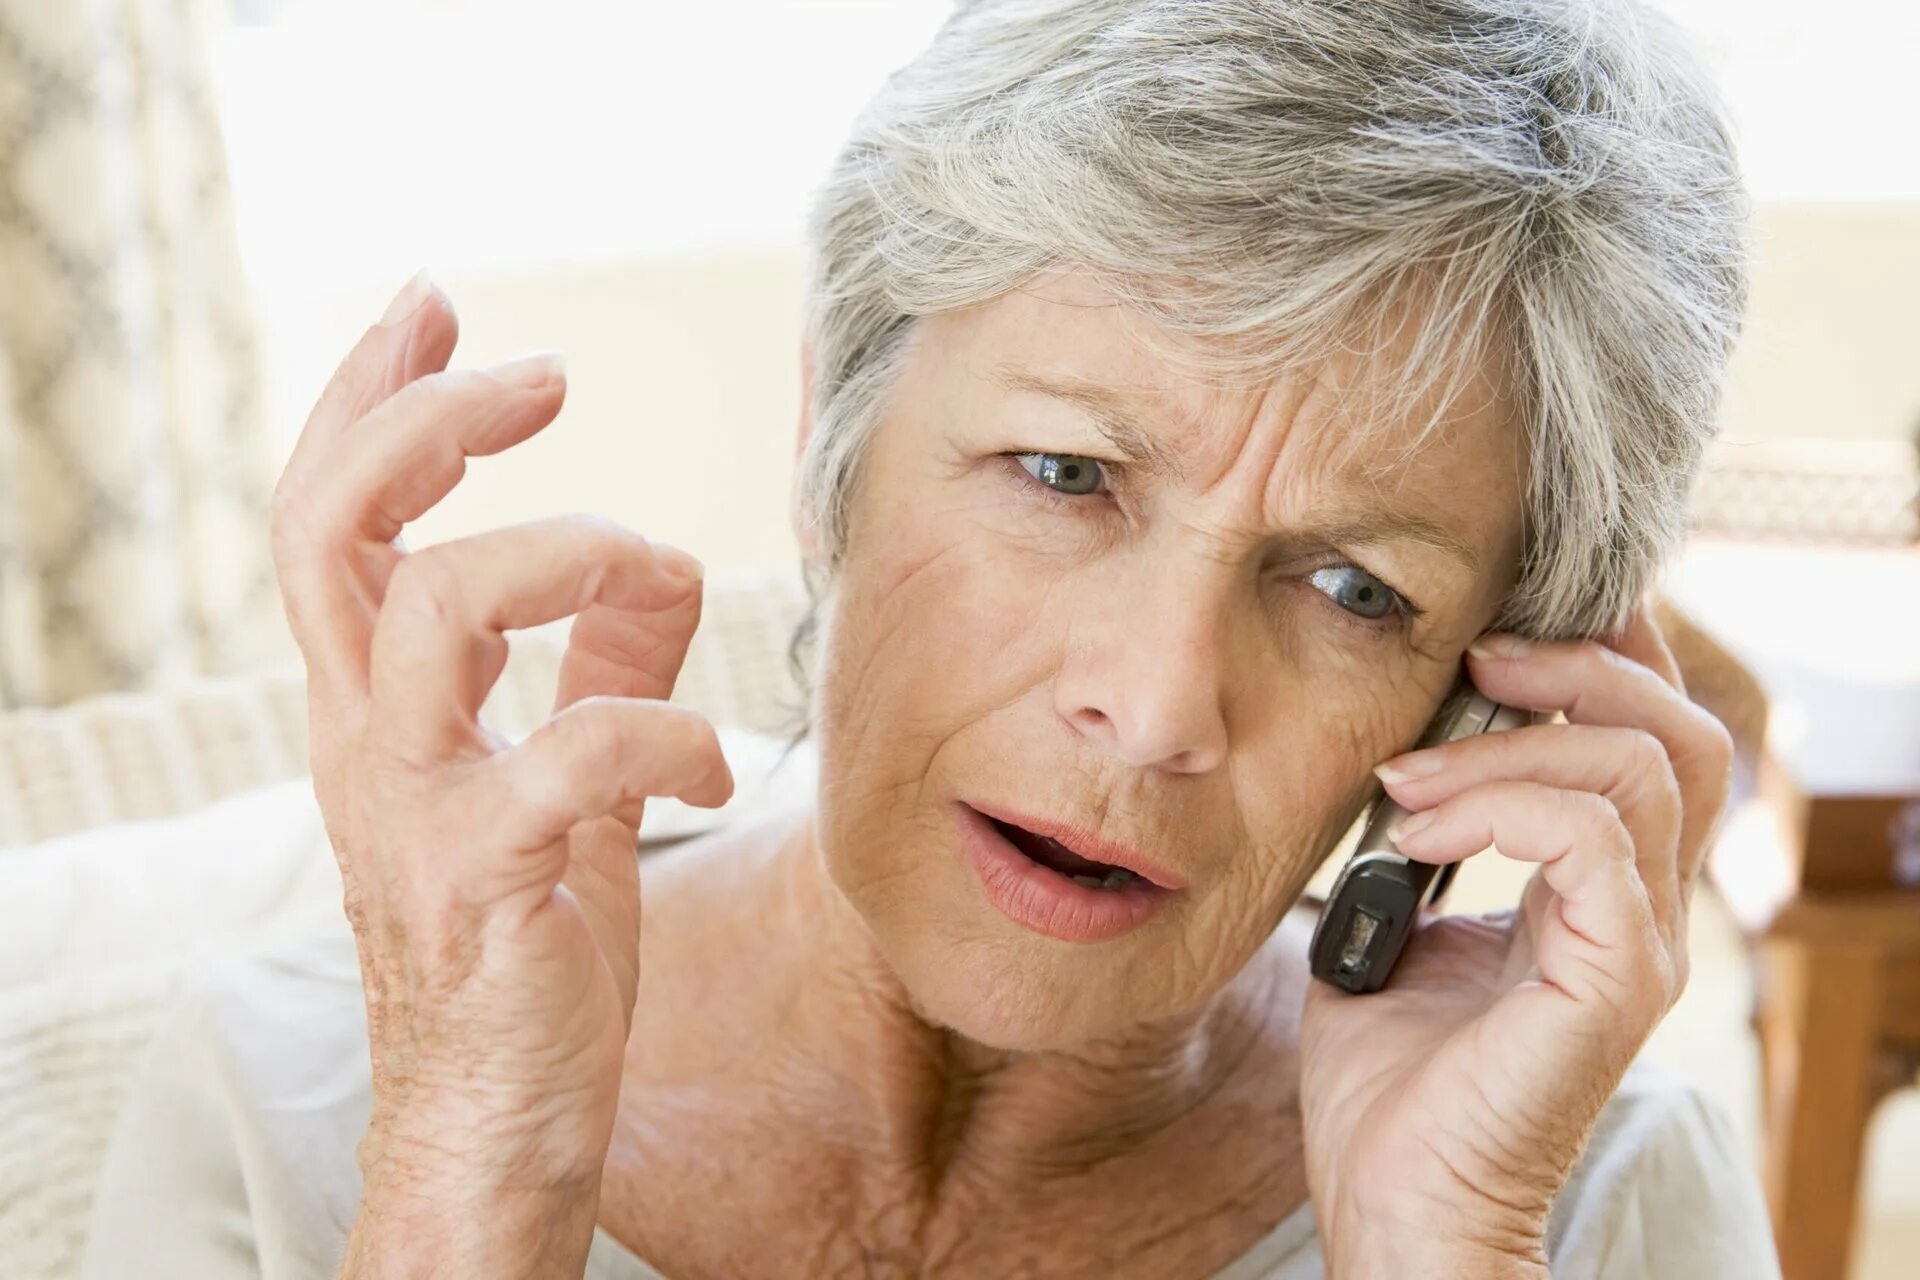 Бесплатные телефоны взрослых женщин. Пожилая женщина. Пожилая женщина с телефоном. Пожилая женщина звонит по телефону. Пожилая женщина с телефоном в руках.